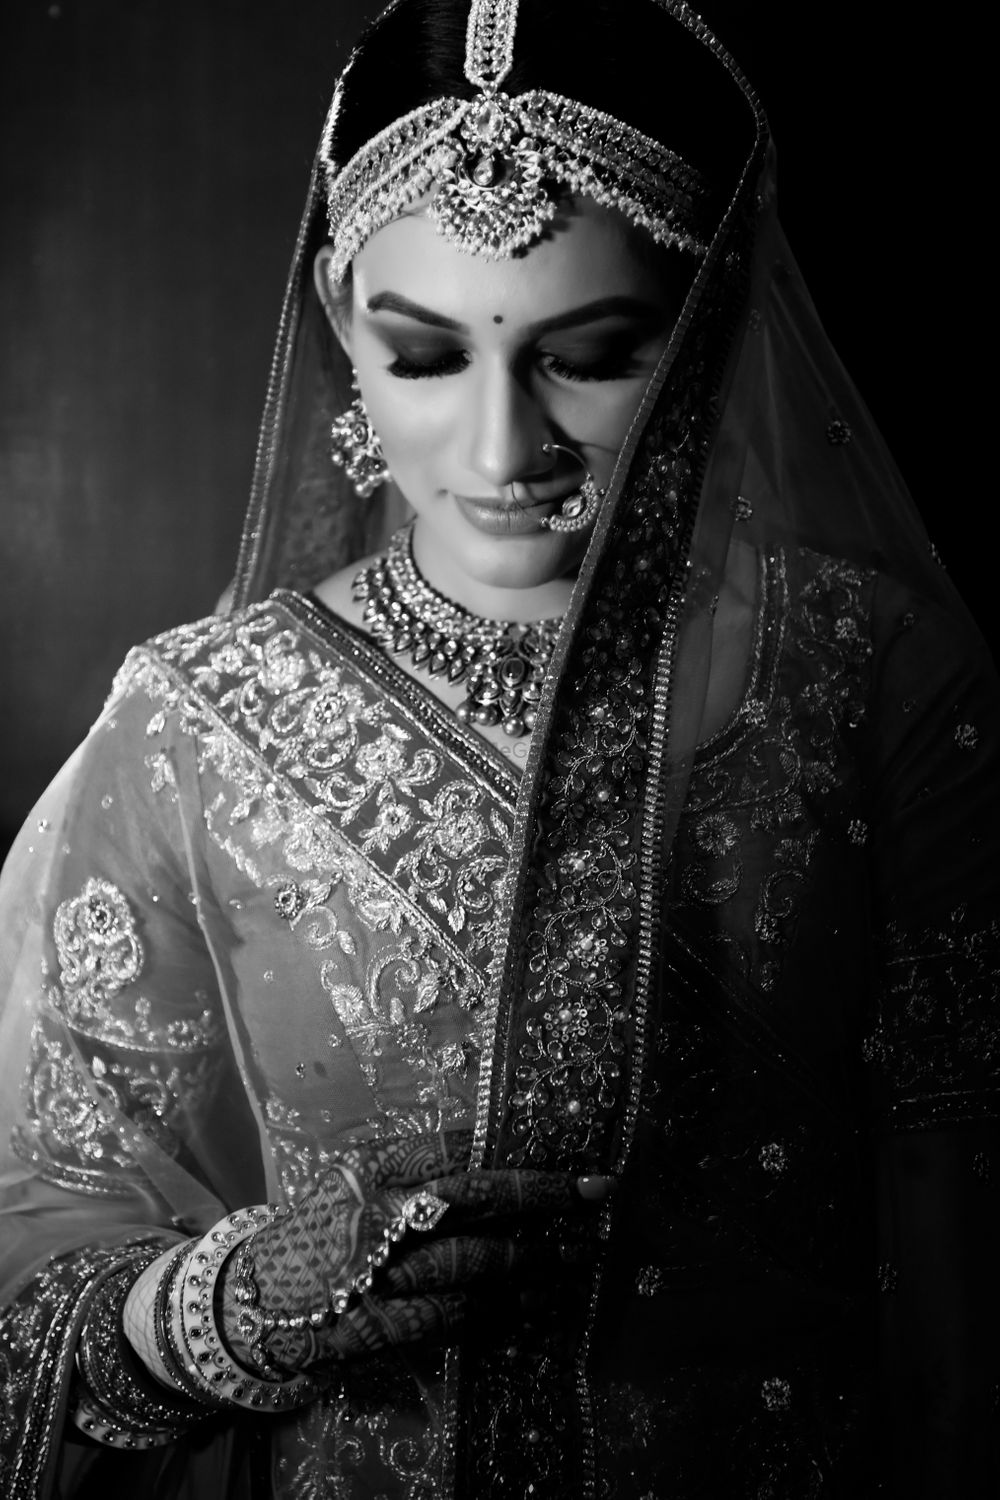 Photo From Riya & Aakash Wedding | The Club - By Wedding Storytellers